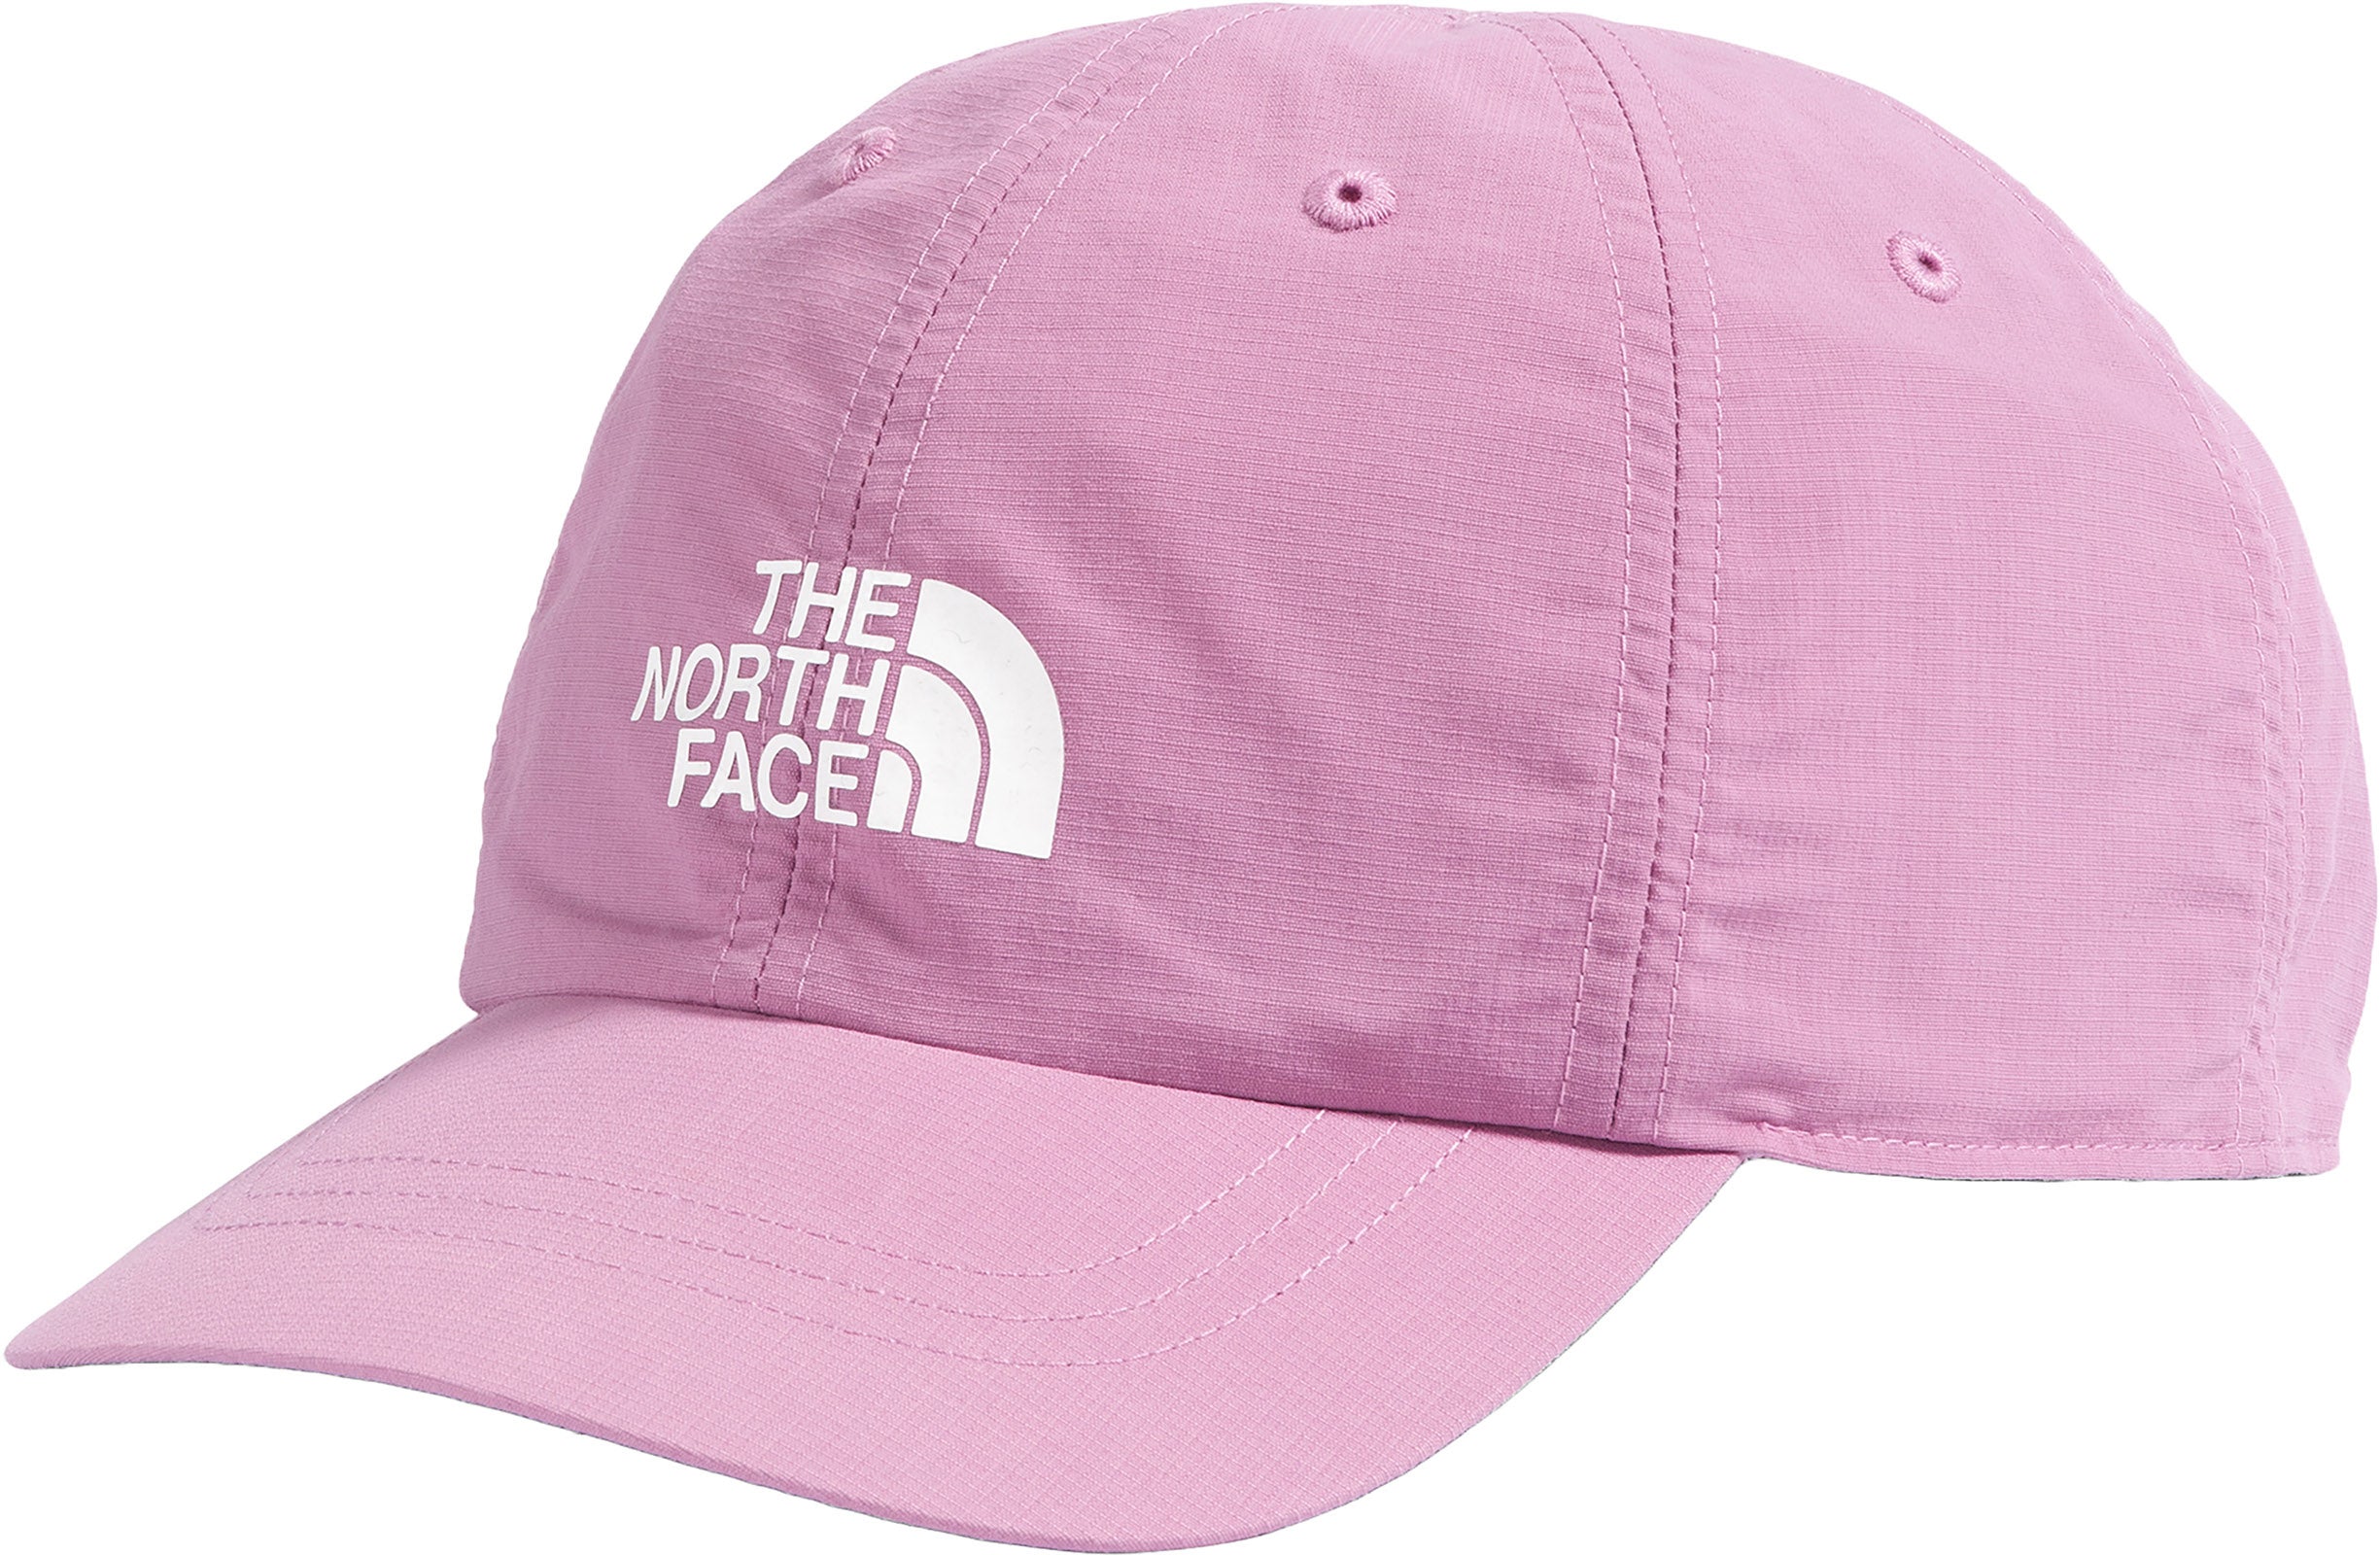 2023年レディースファッション福袋 THE Hat NORTH Kids Women, FACE & Kids The Hike North for  Hat Face Horizon KM 外出・移動用品